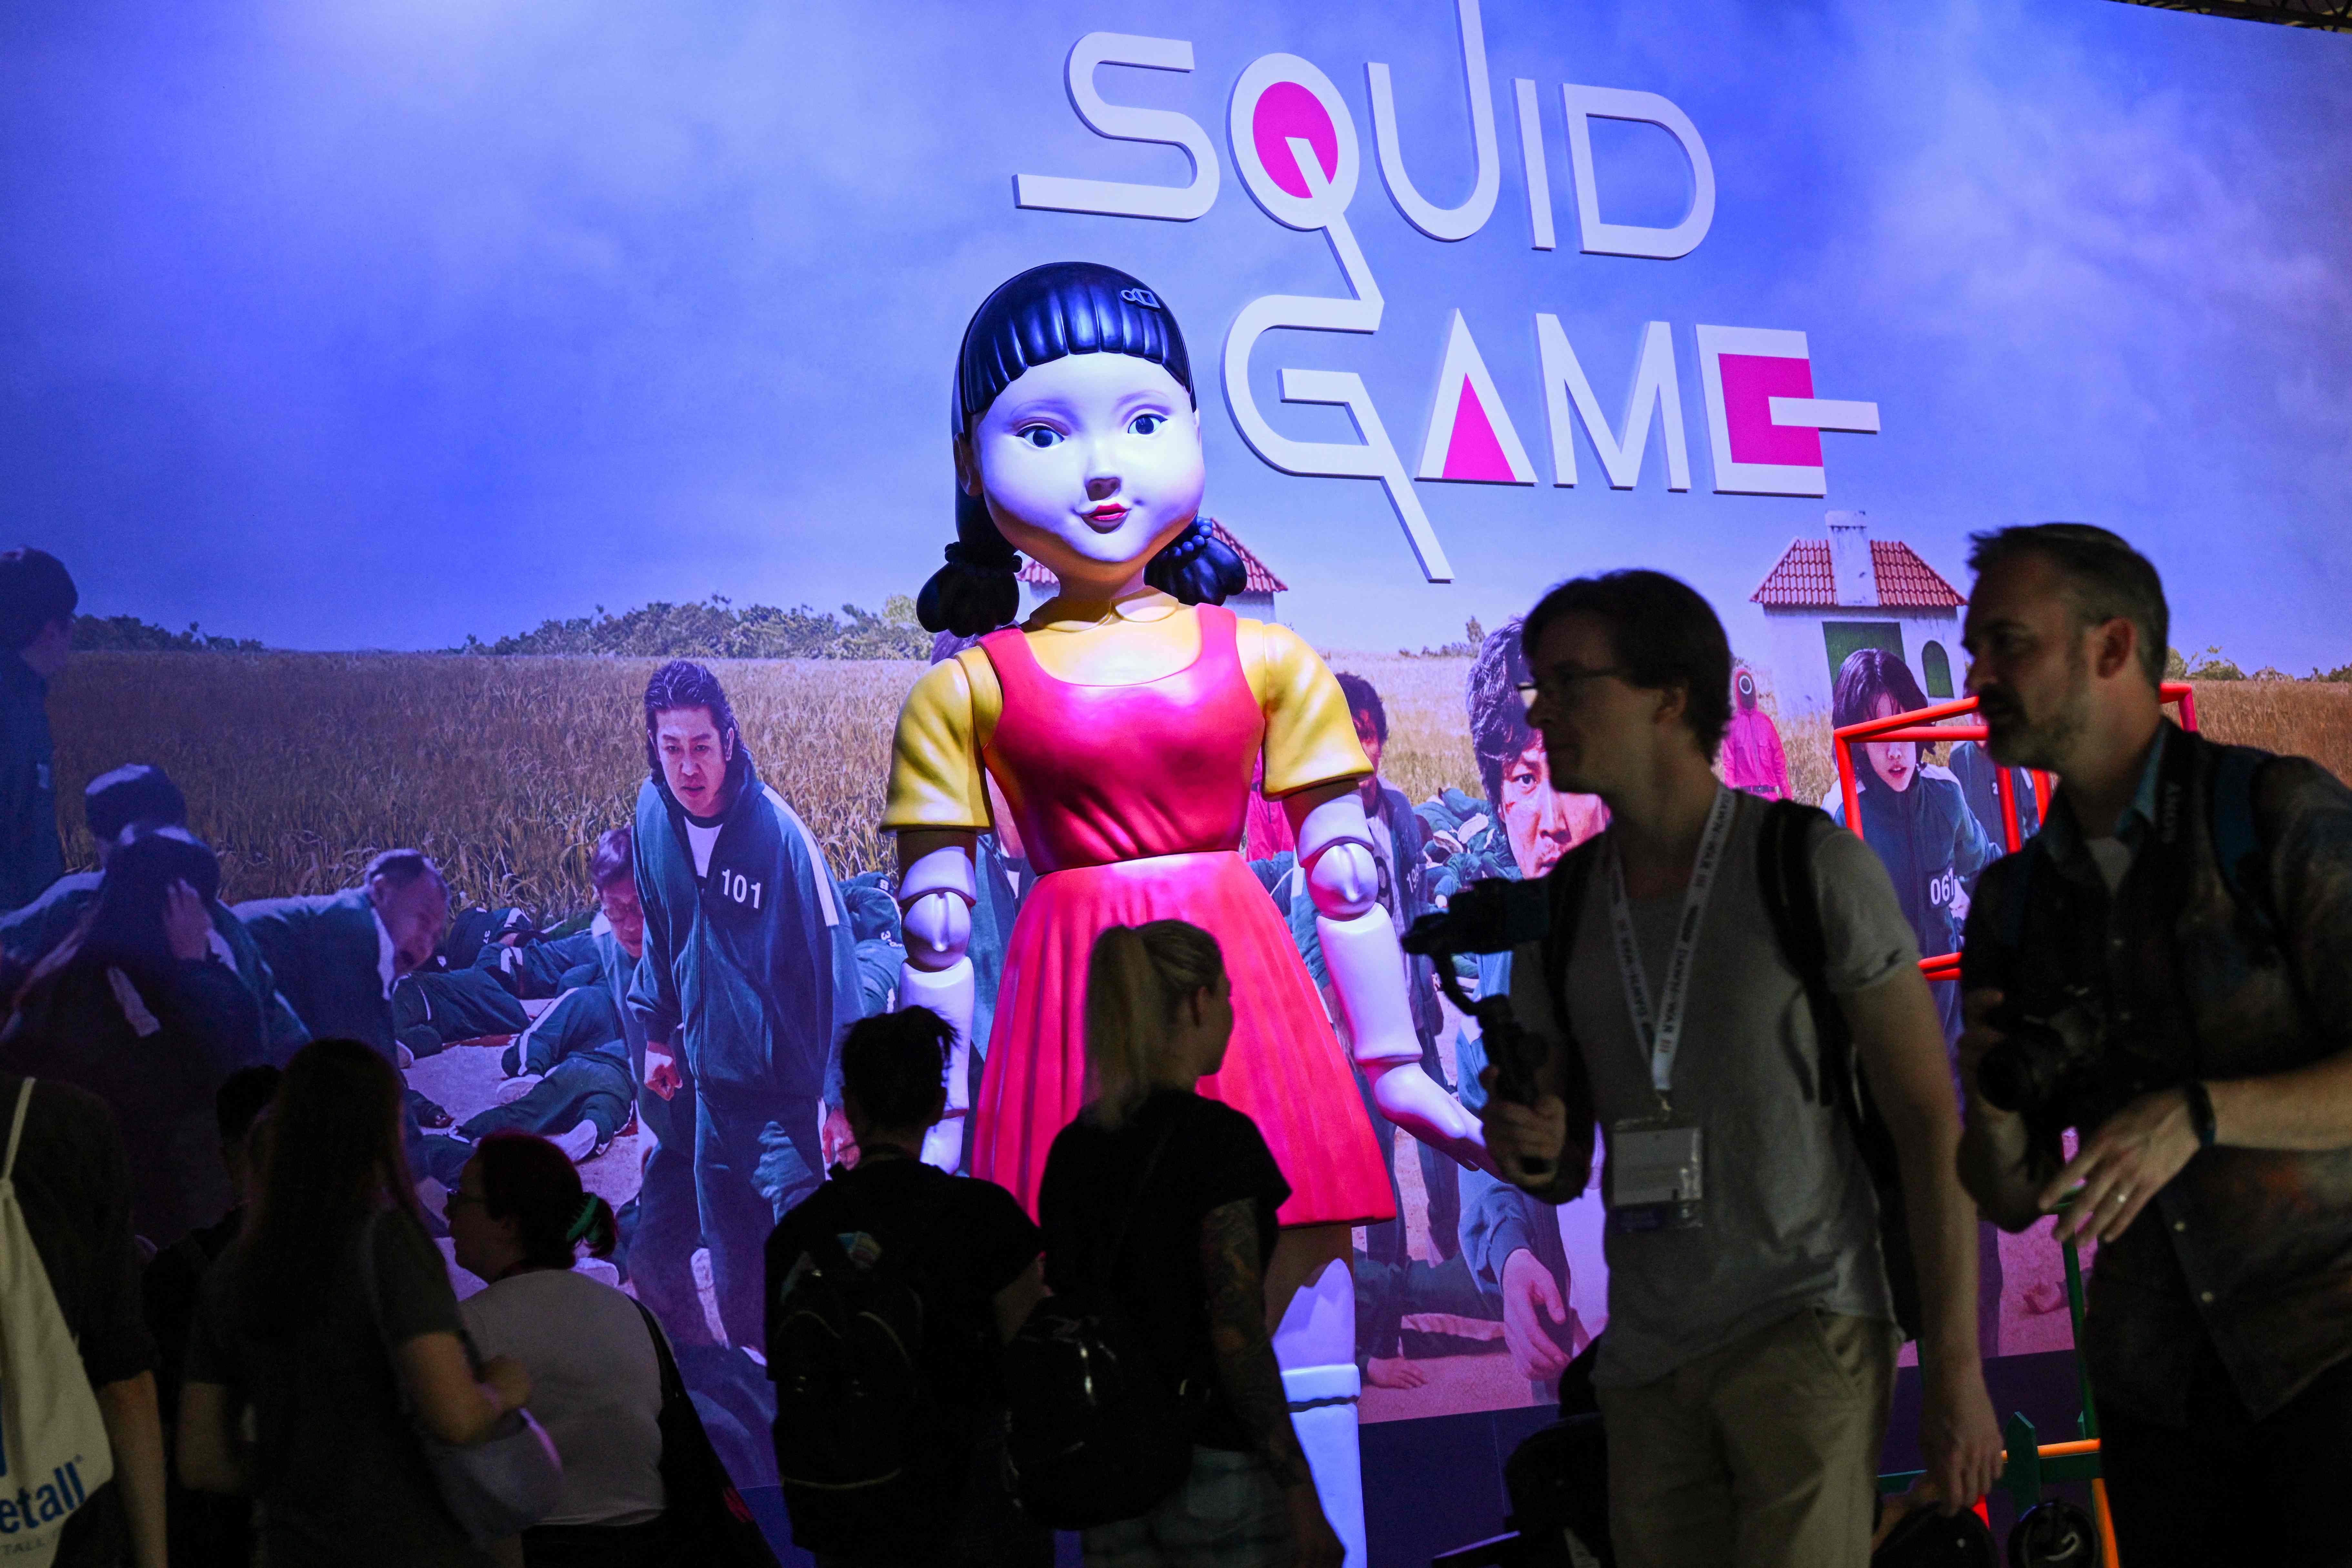 Squid Game - O Desafio: Os produtores já estão a planear uma temporada 2 ?